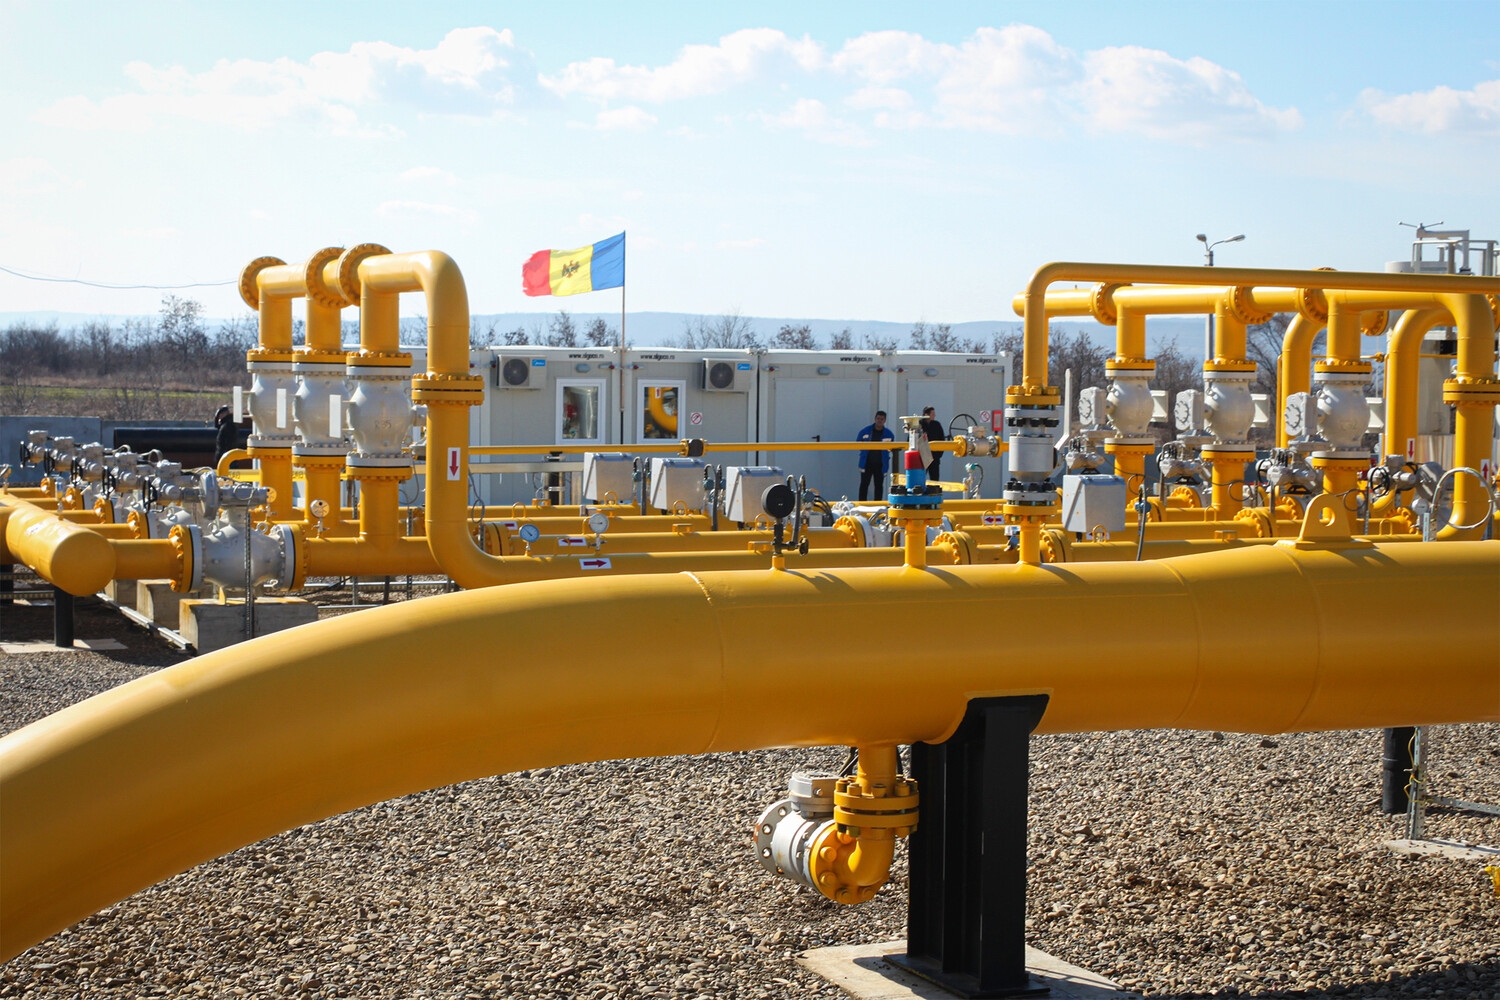 Кишинев вернулся к закупкам газа у «Газпрома» после перерыва в 3 месяца